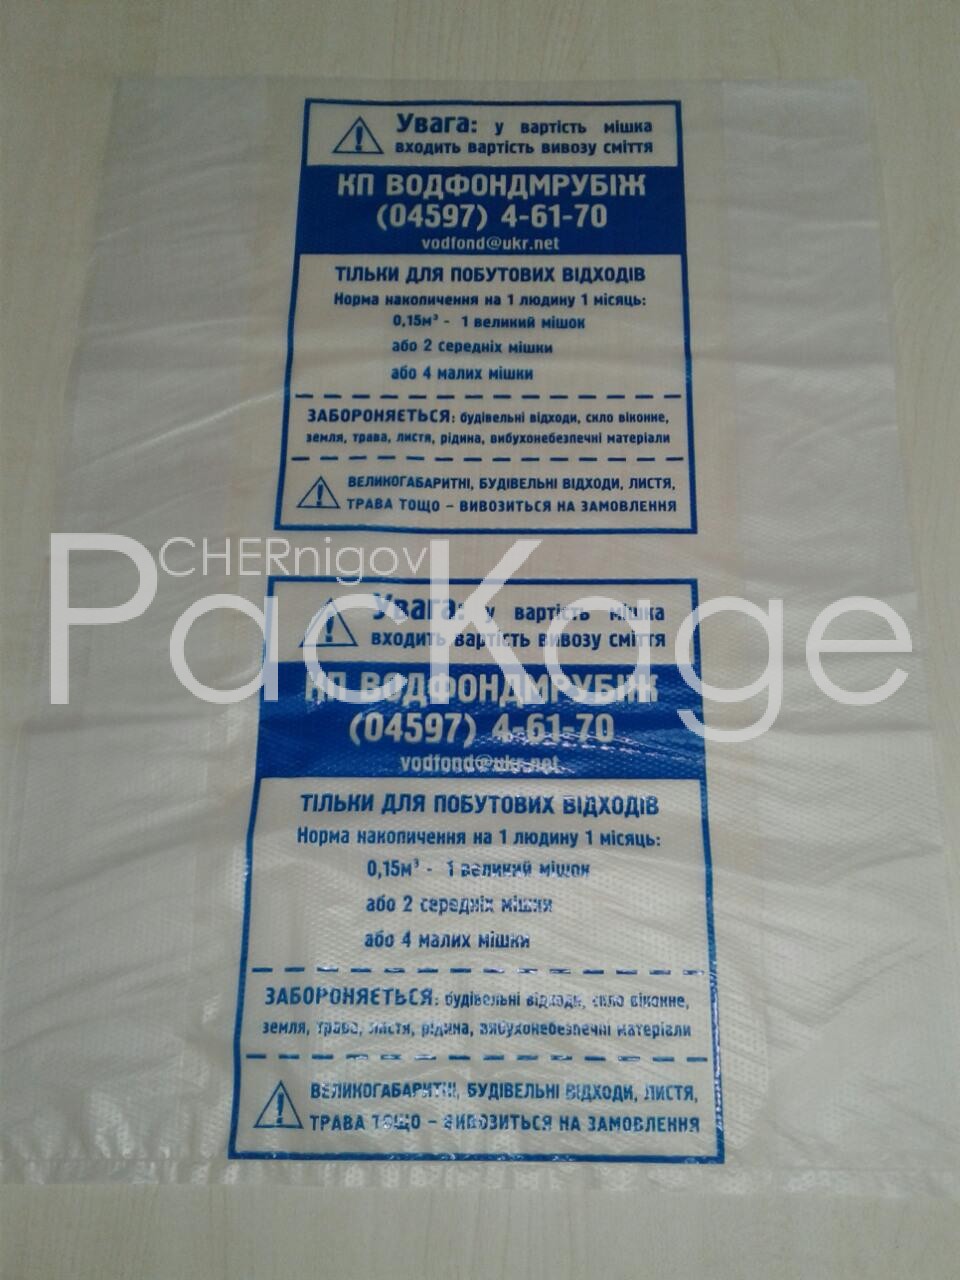 Полиэтиленовая пленка для фасовочных пакетов Chernigov Package - Фото фасовка пнд 30 мкм с тиснением